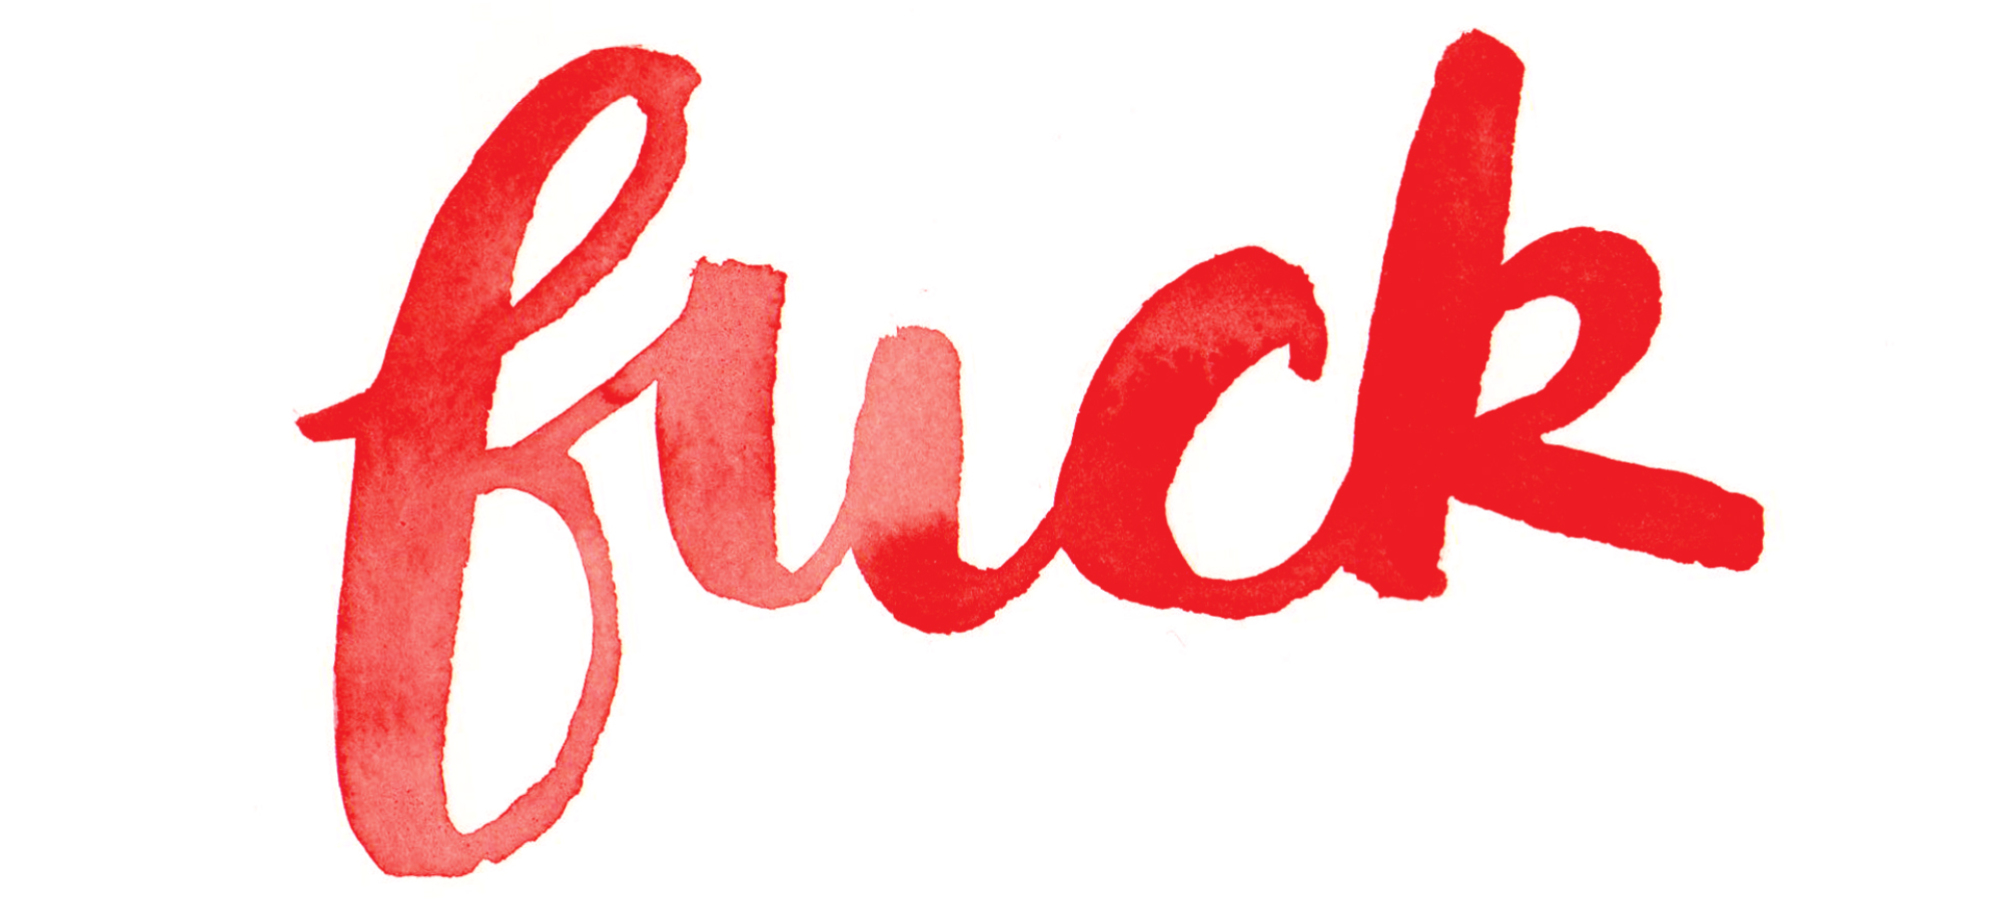 Le mot "fuck" en lettres cursives rouges.